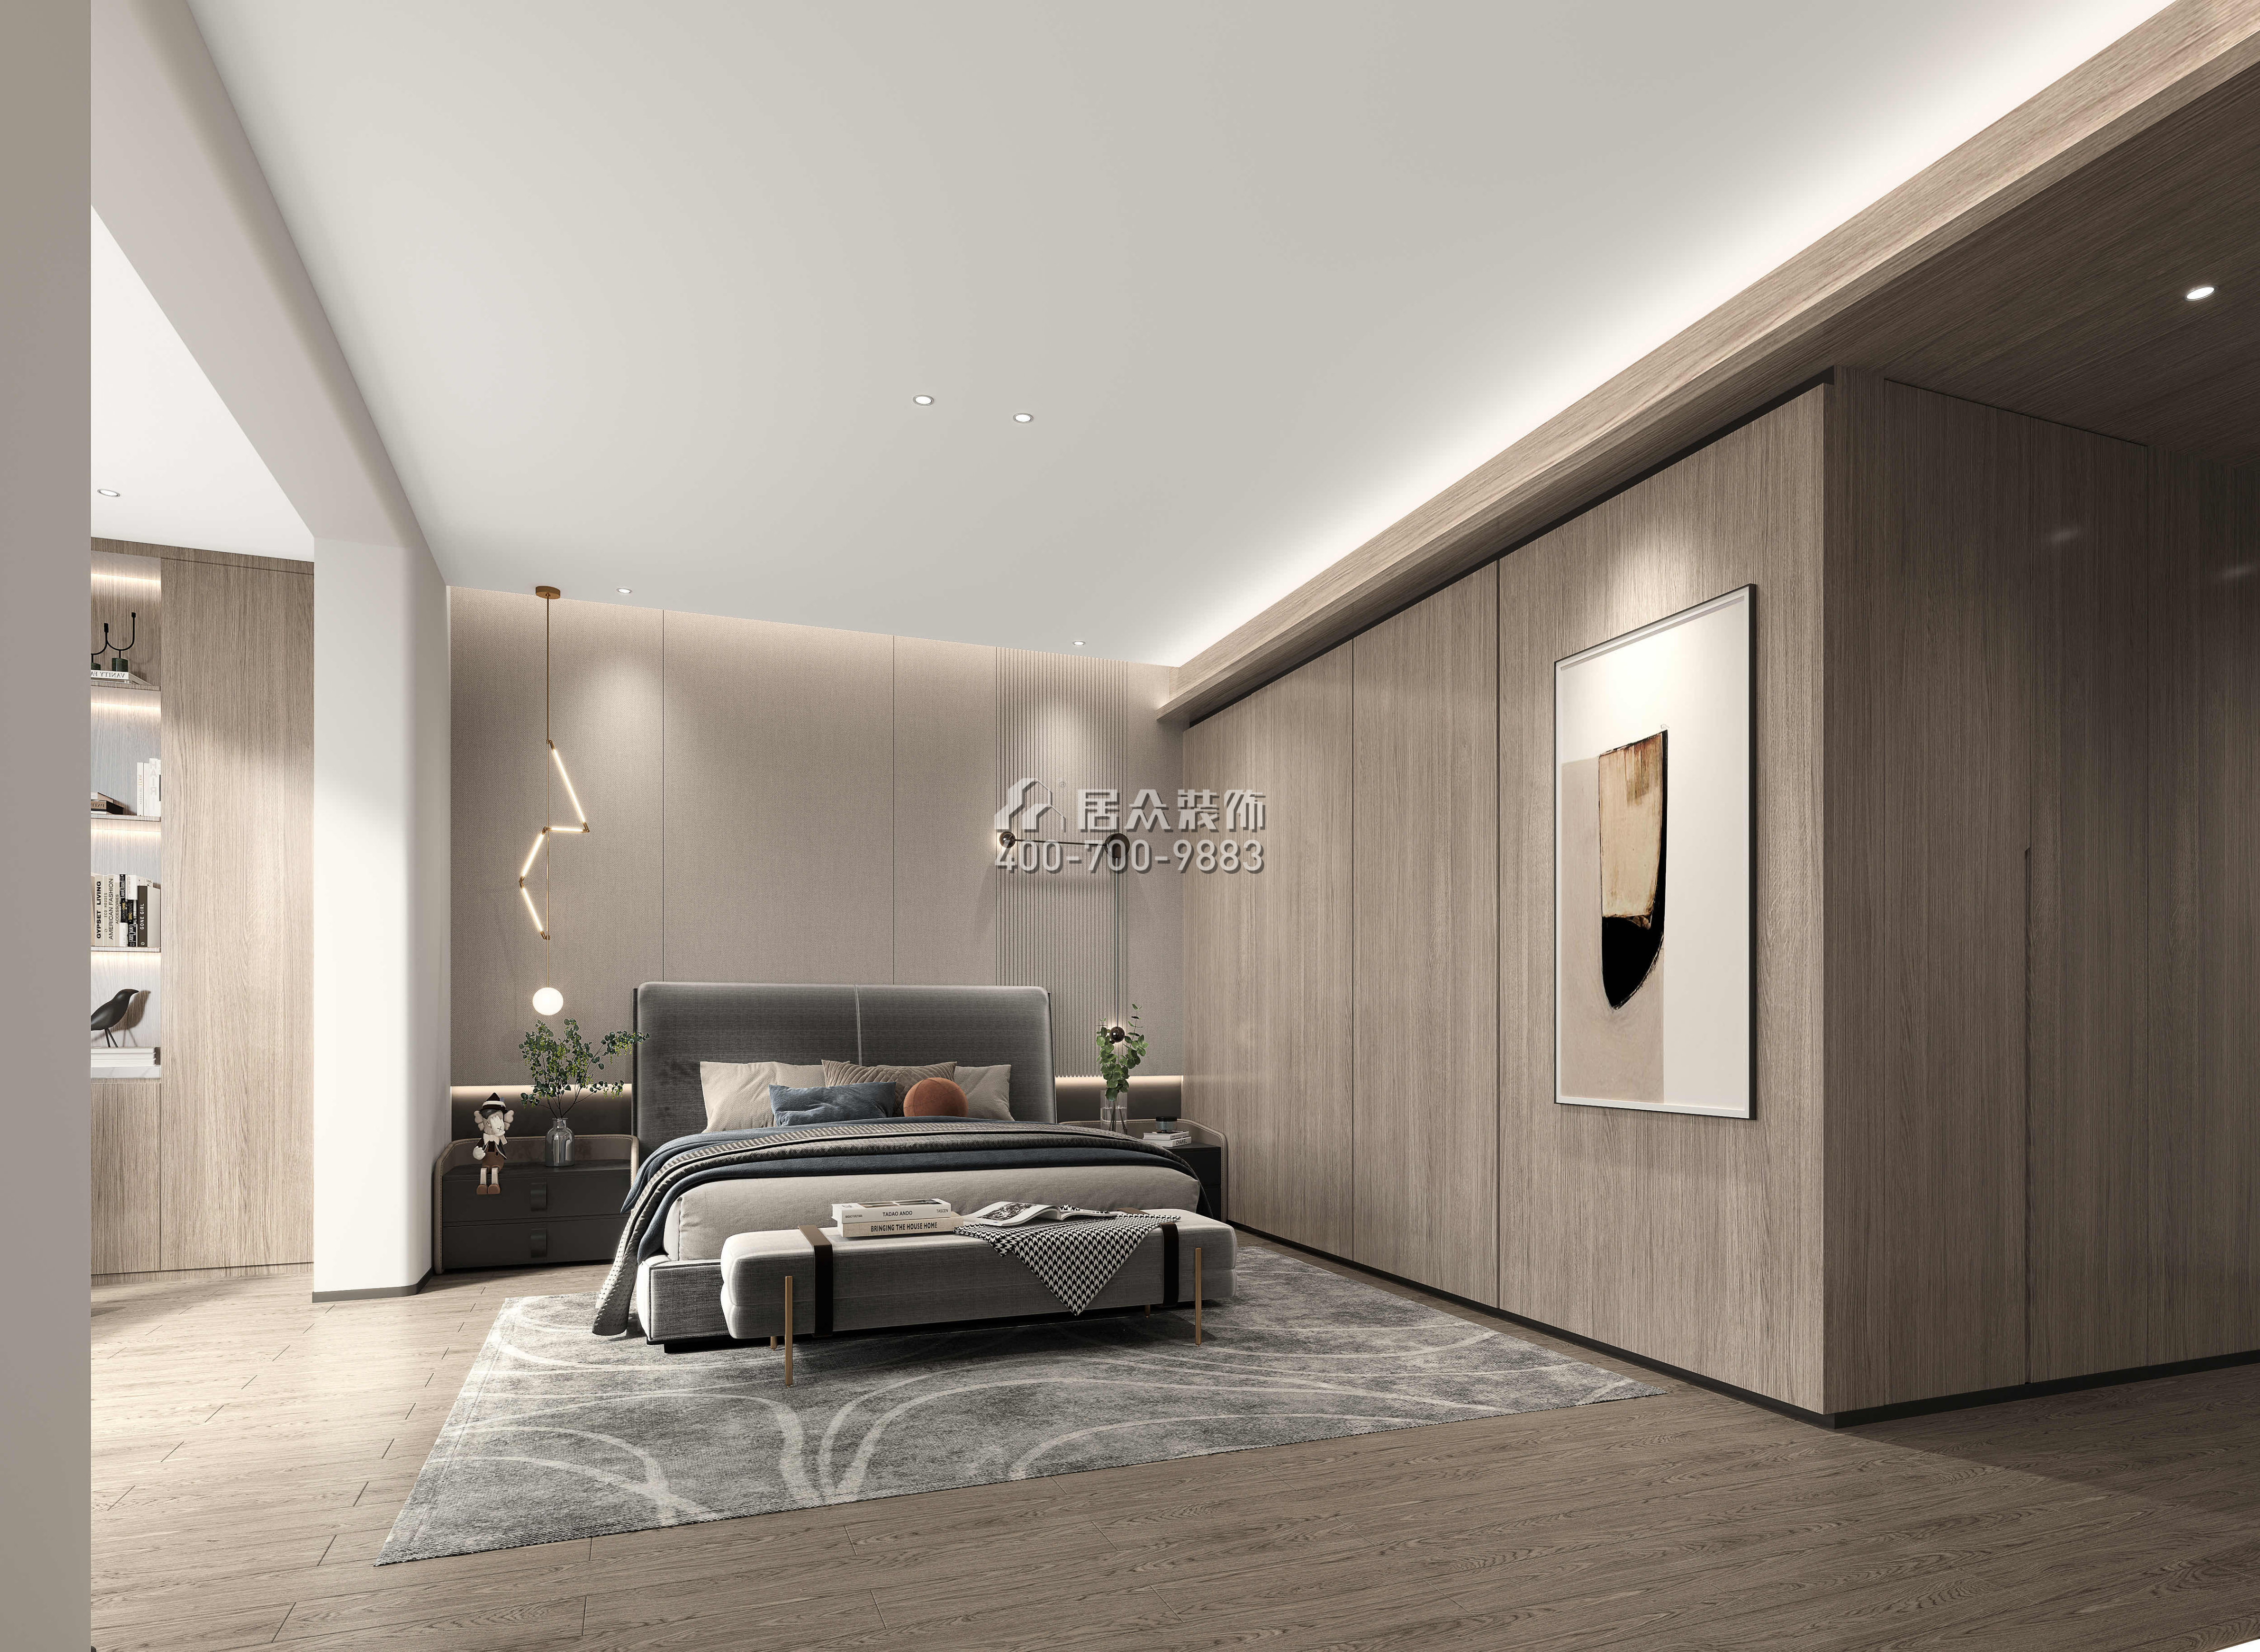 世纪村王府226平方米现代简约风格平层户型卧室装修效果图